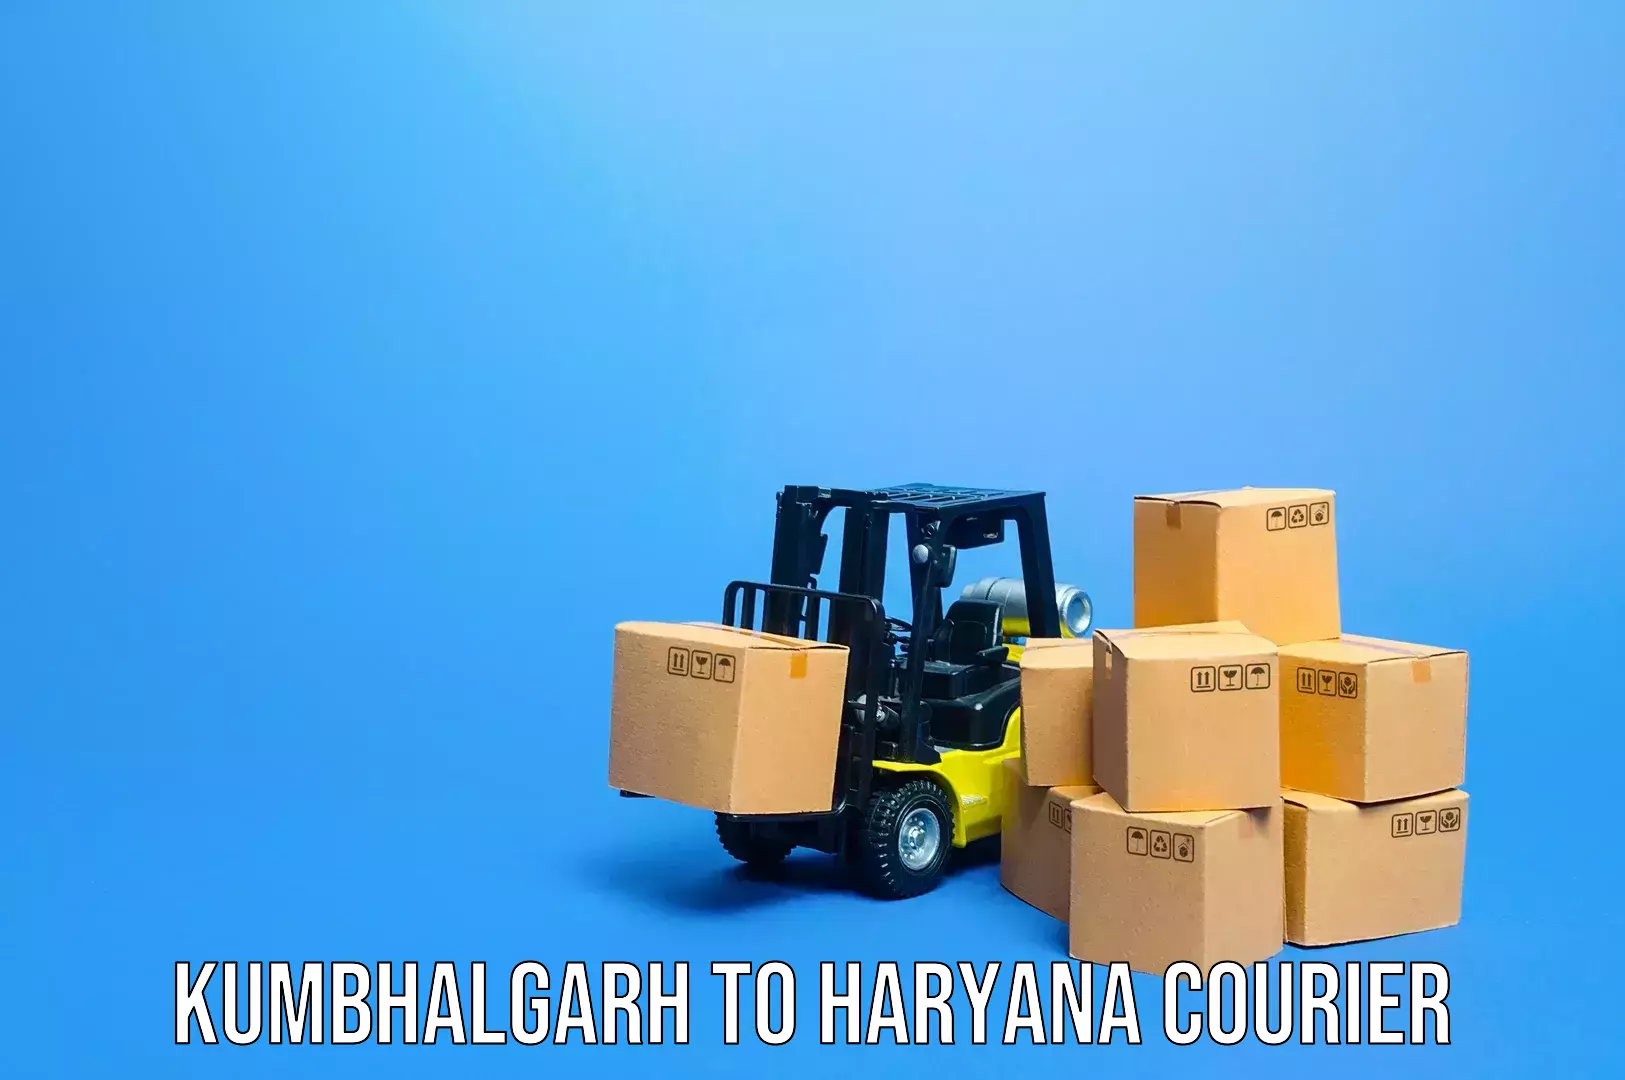 Baggage transport updates Kumbhalgarh to Chirya